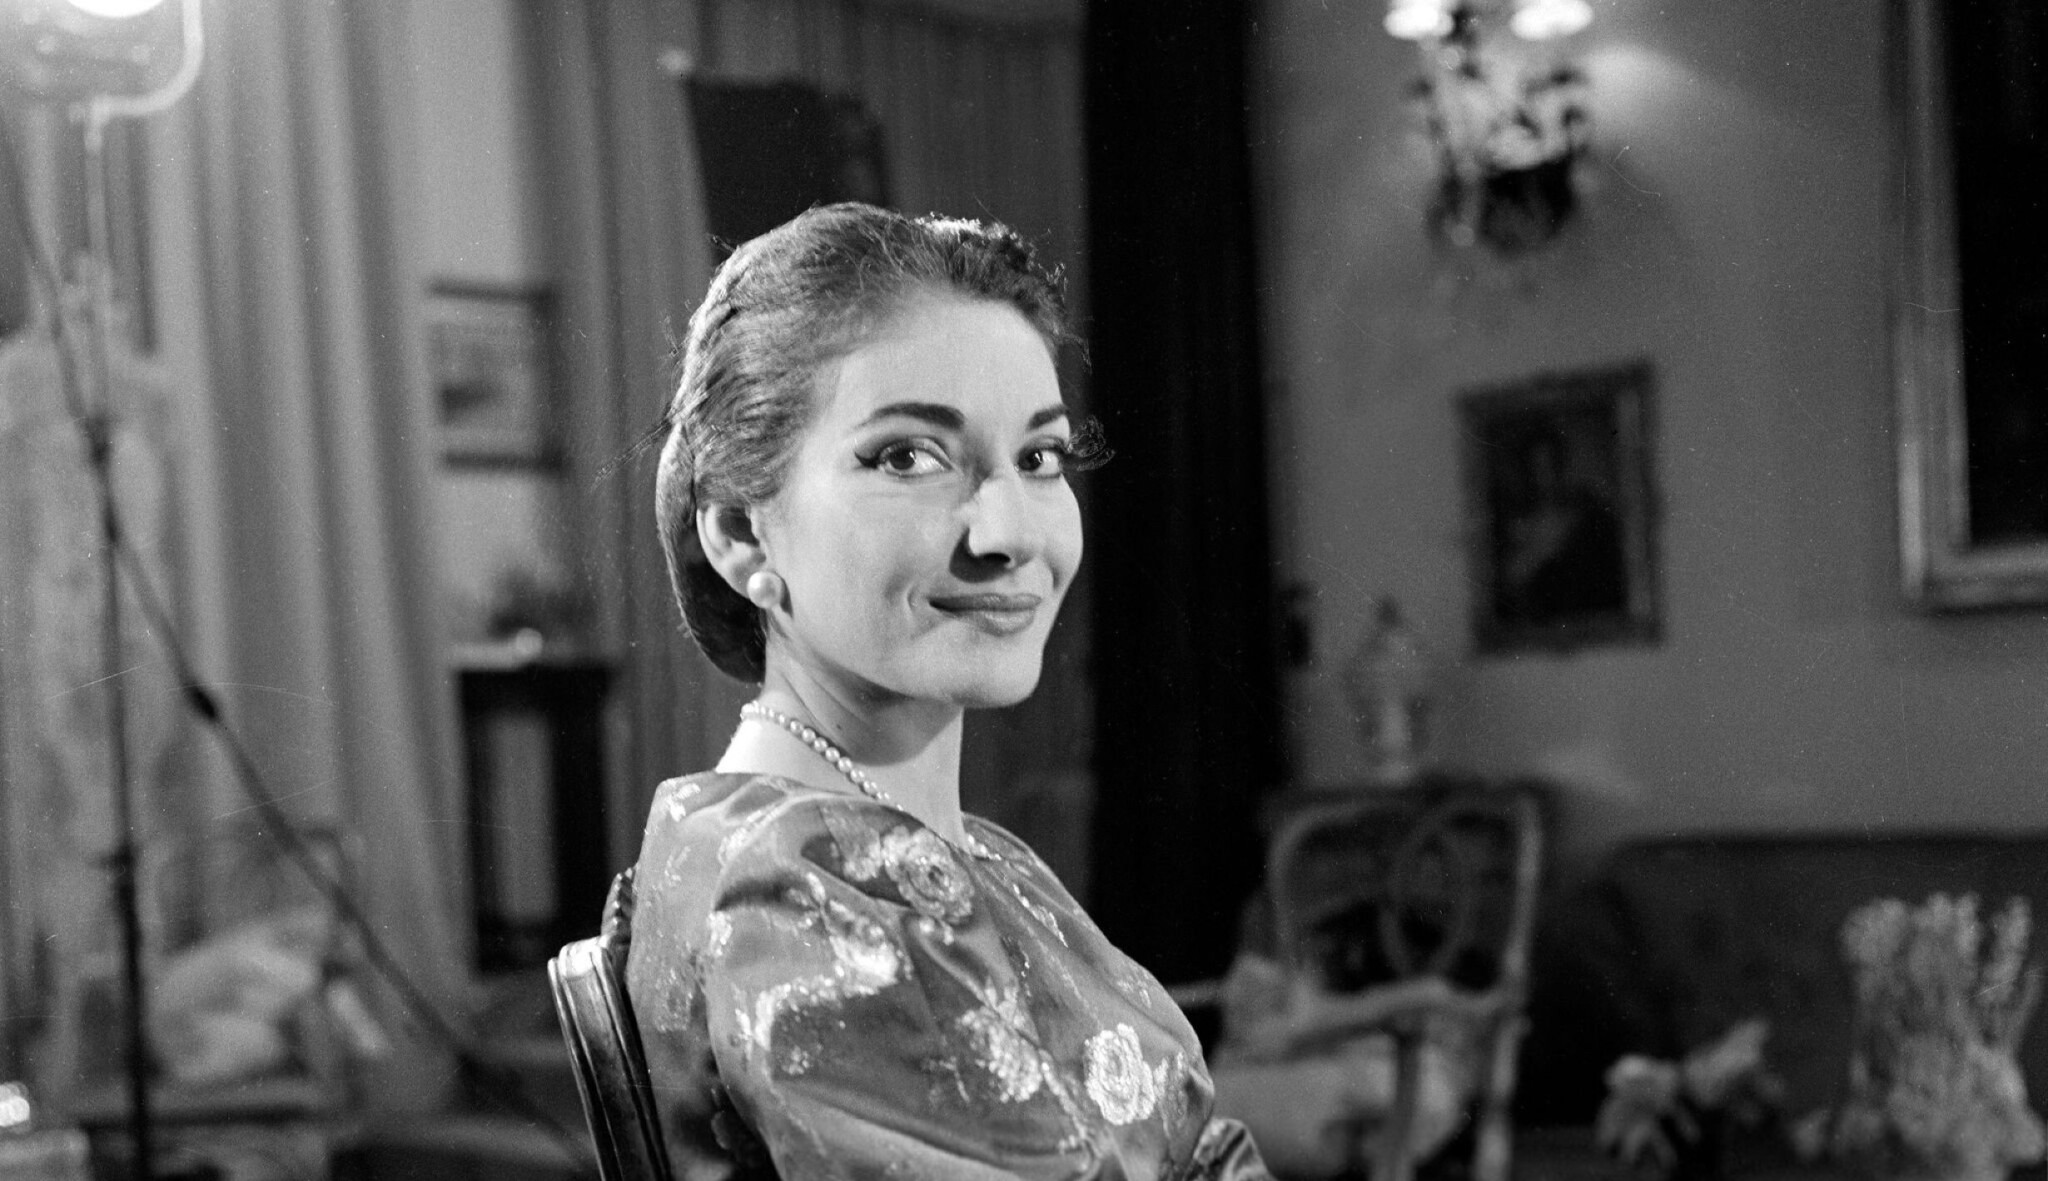 Árie puklého srdce. Slyšte Marii Callas, královnu oper